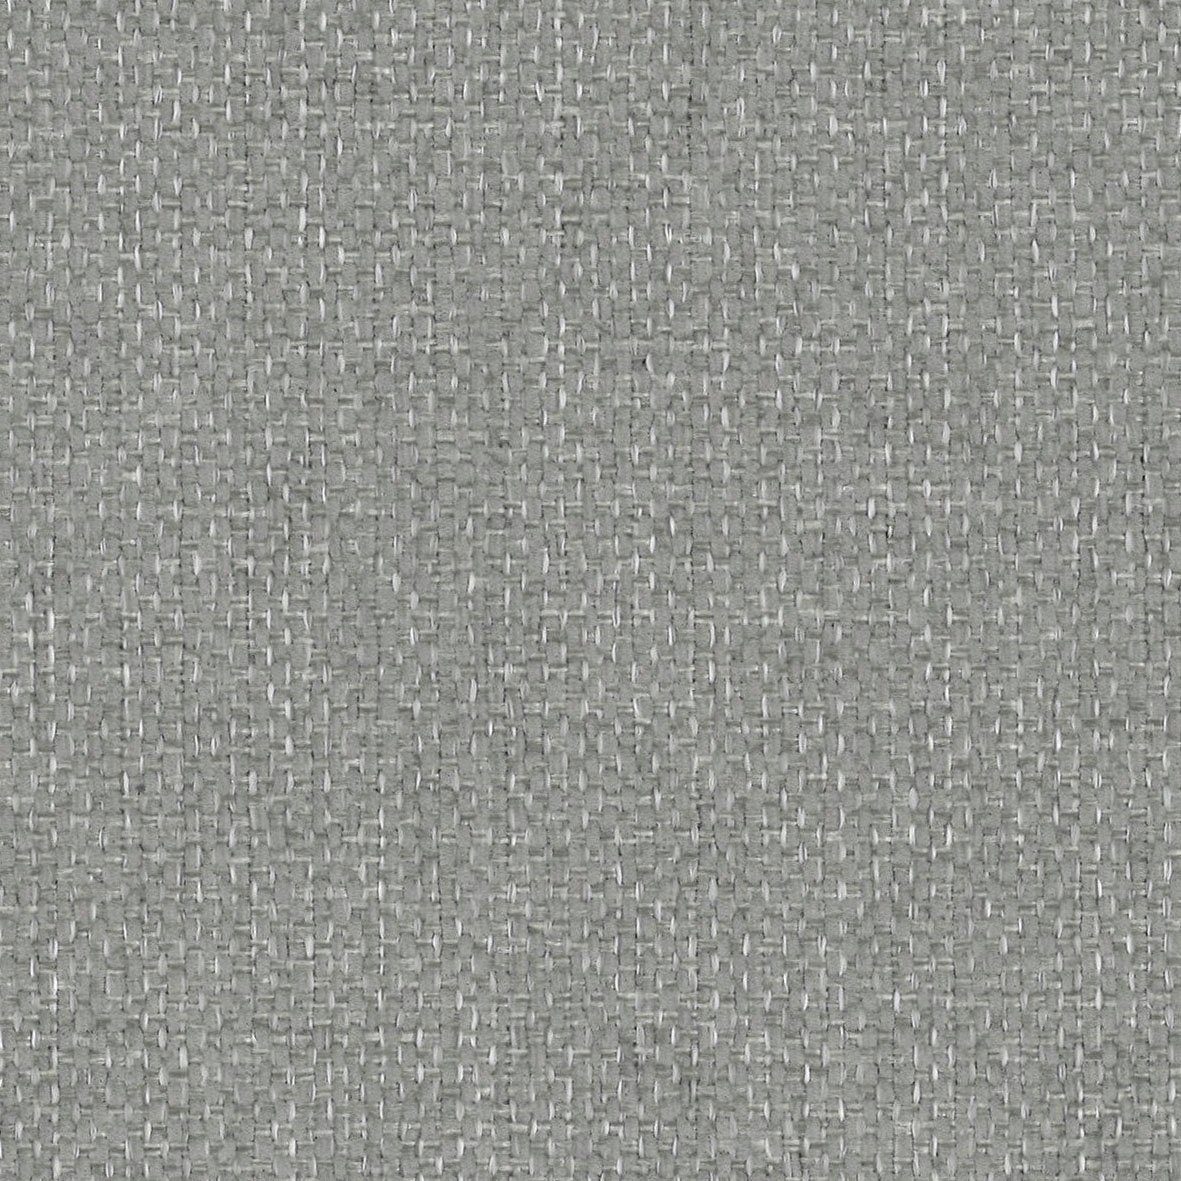 Koa, warm Proportionen schöne grey Sofa-Mittelelement Komfort, INOSIGN angenehmer